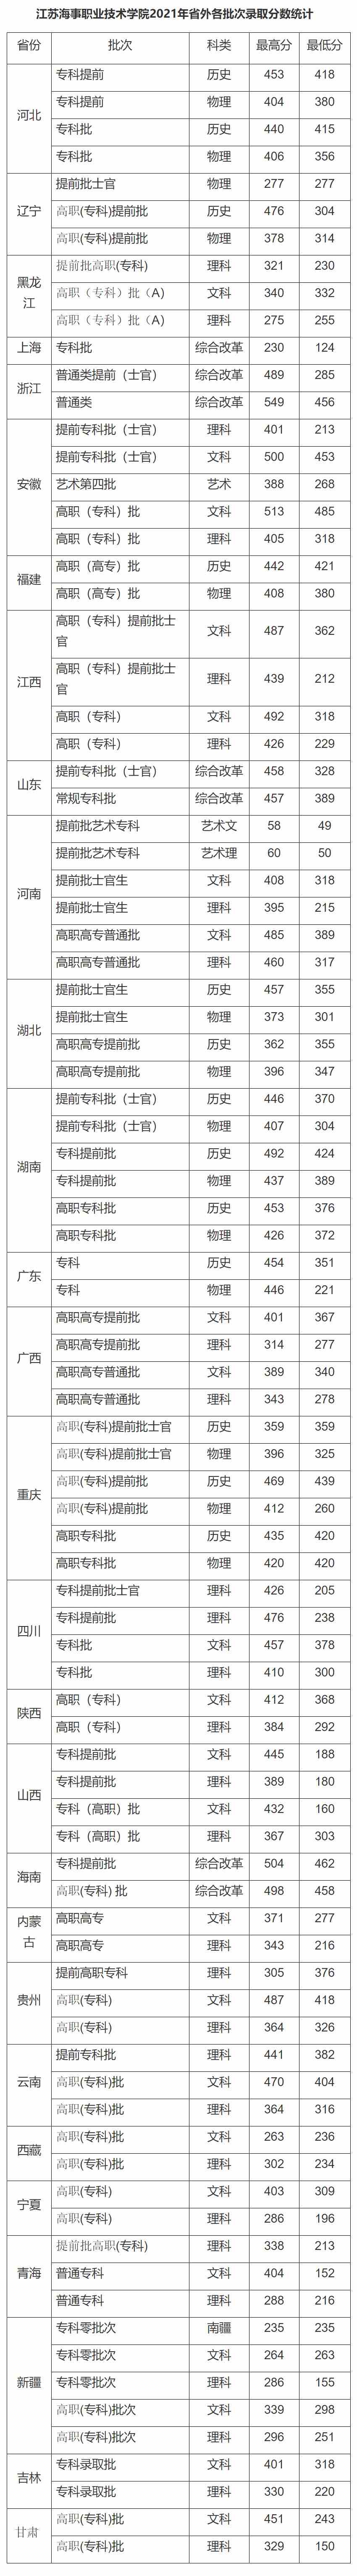 江苏海事职业技术学院2021年省外各批次录取分数统计.jpg